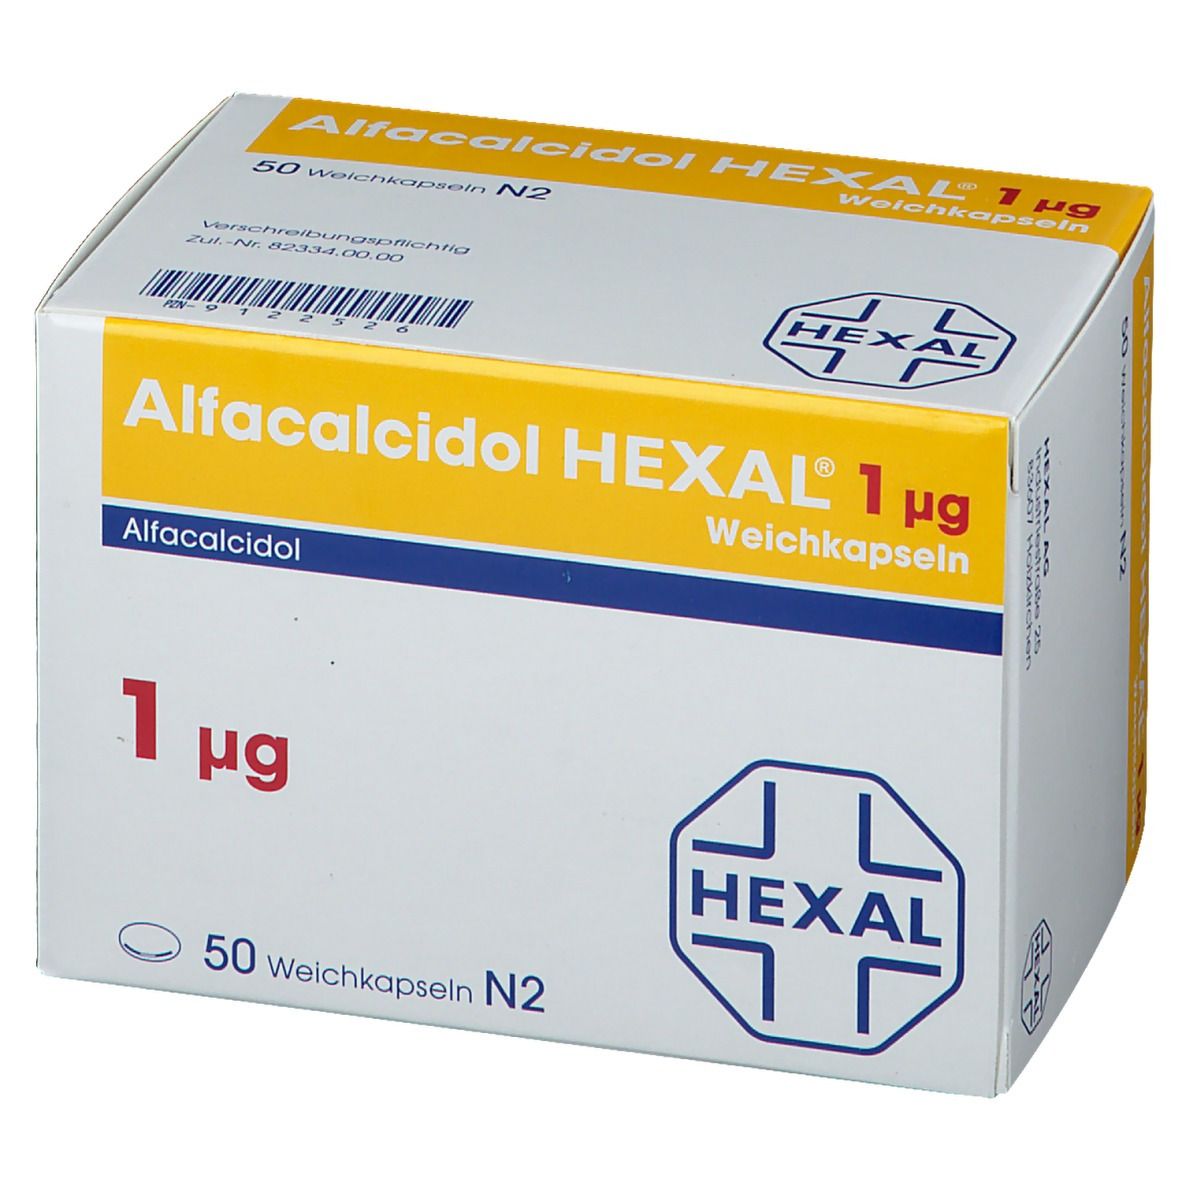 Alfacalcidol HEXAL® 1 µg